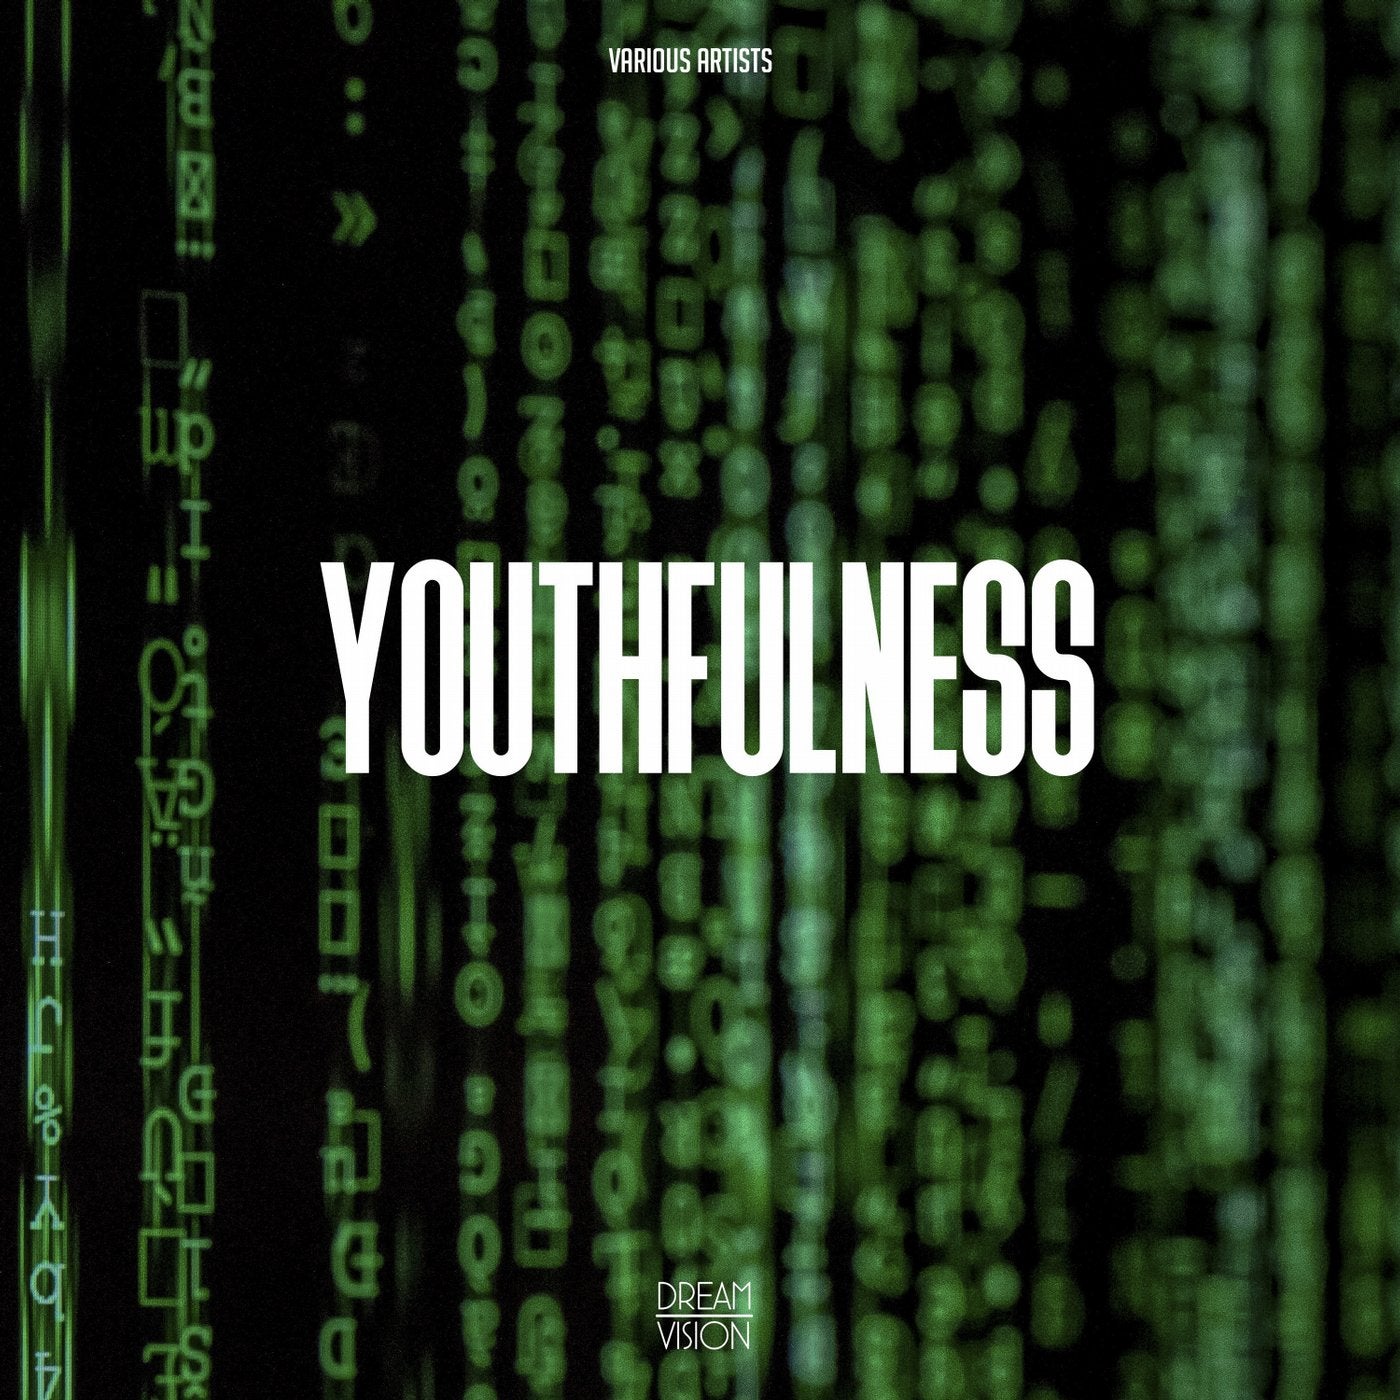 Youthfulness